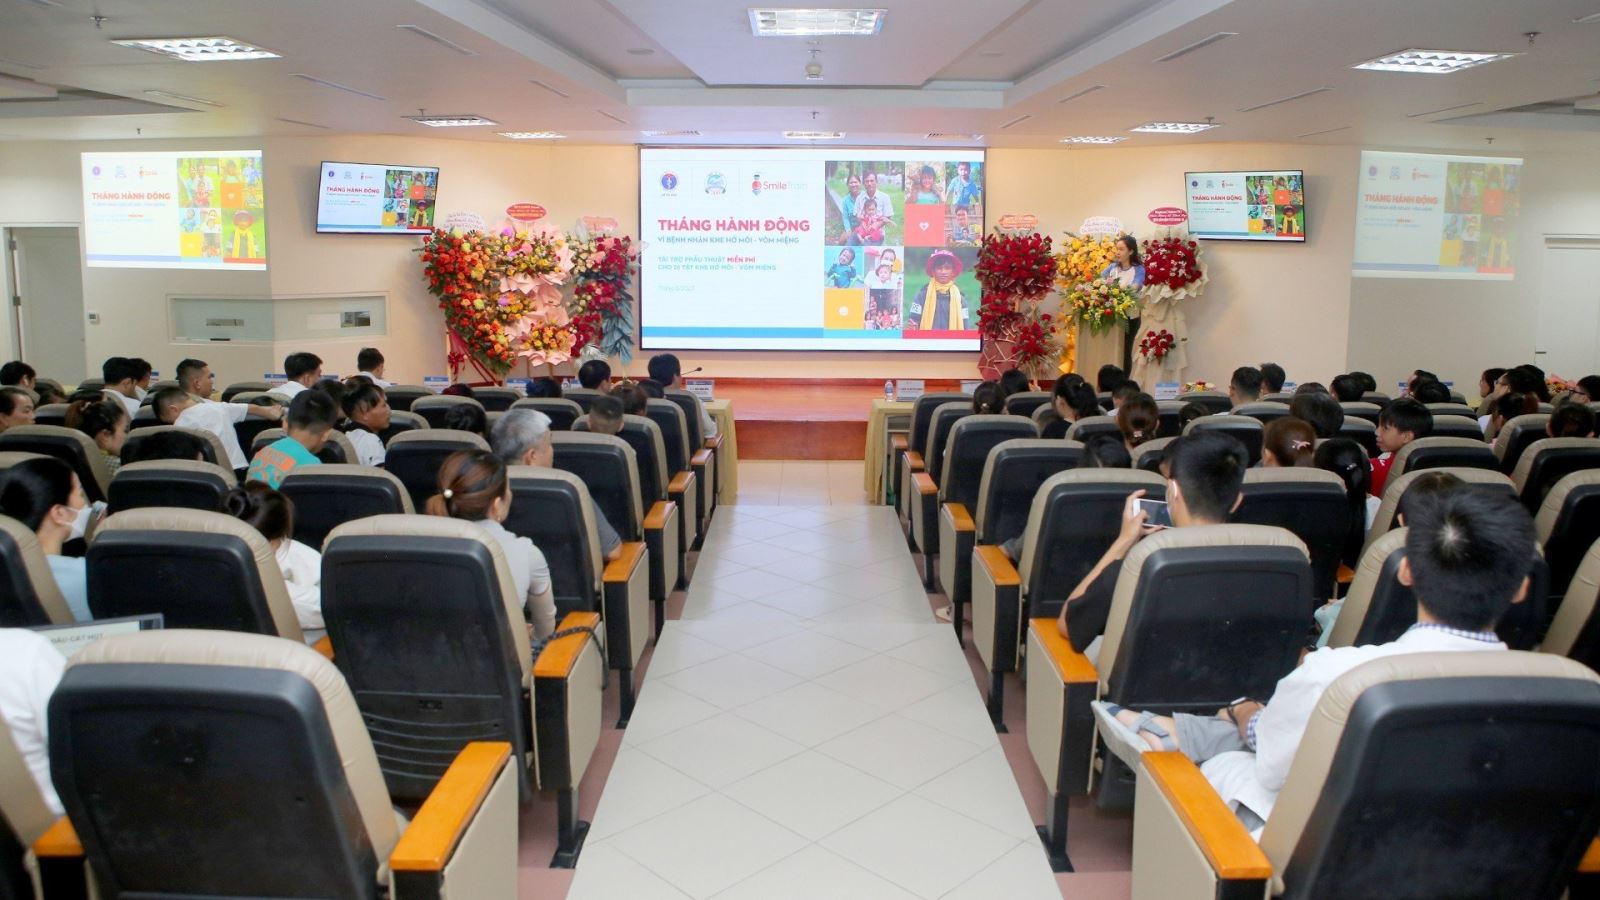 Bệnh viện Trung ương Huế đã cùng phối hợp với Smile Train tổ chức Lễ phát động “Tháng hành động vì trẻ em khe hở môi - vòm miệng”.